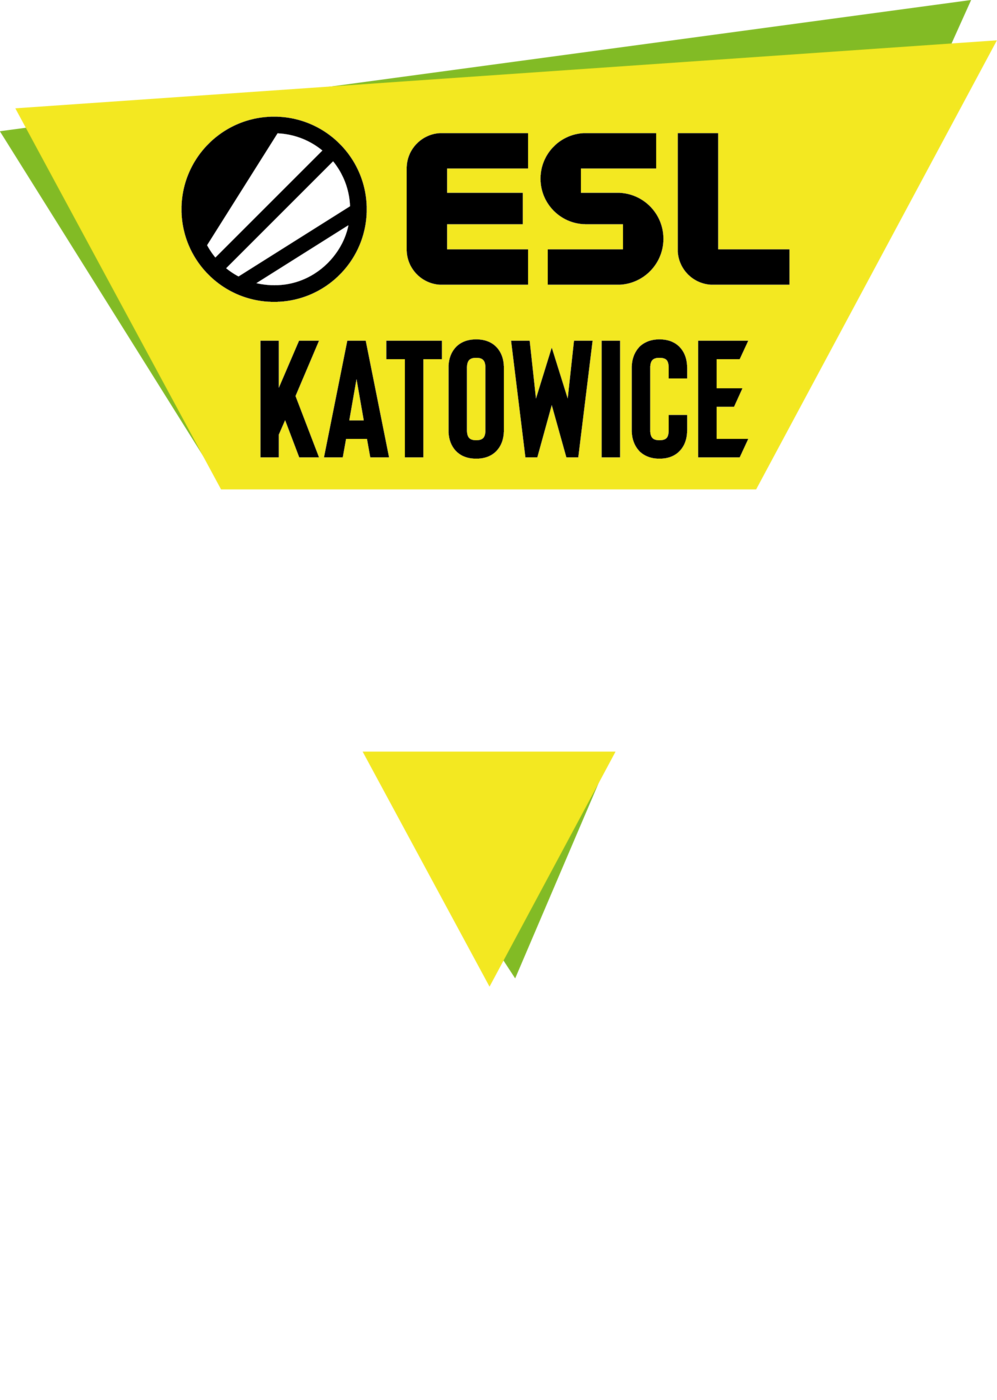 ESL Katowice Royale, hyperx, hyperx ESL Katowice Royale, hyperx fortnite, turniej fortnite